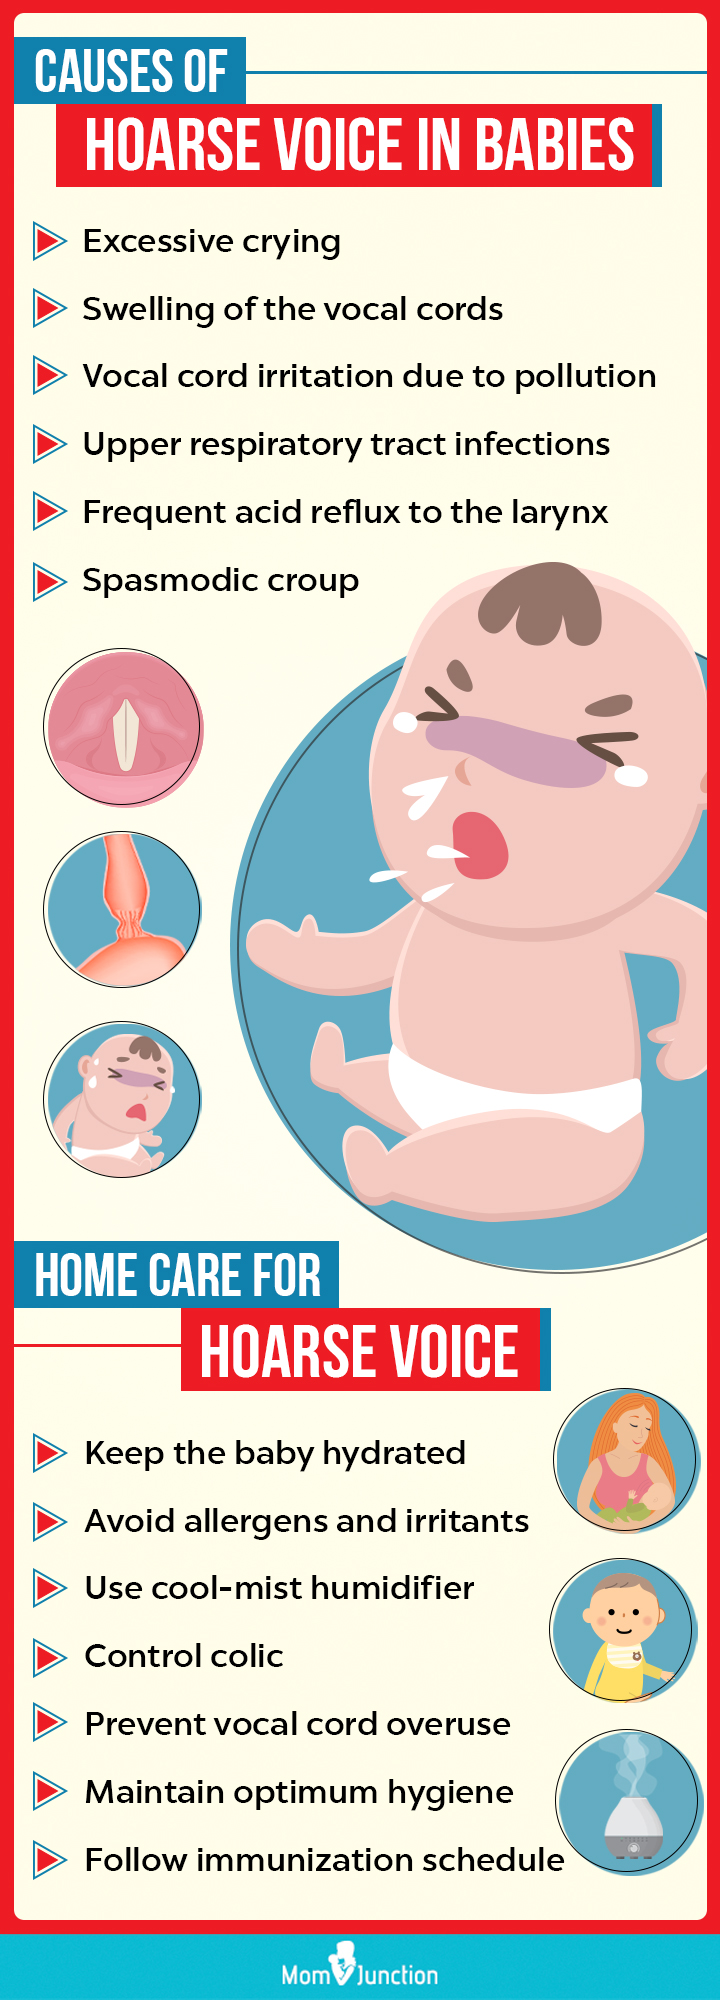 婴儿声音沙哑的原因(信息图)